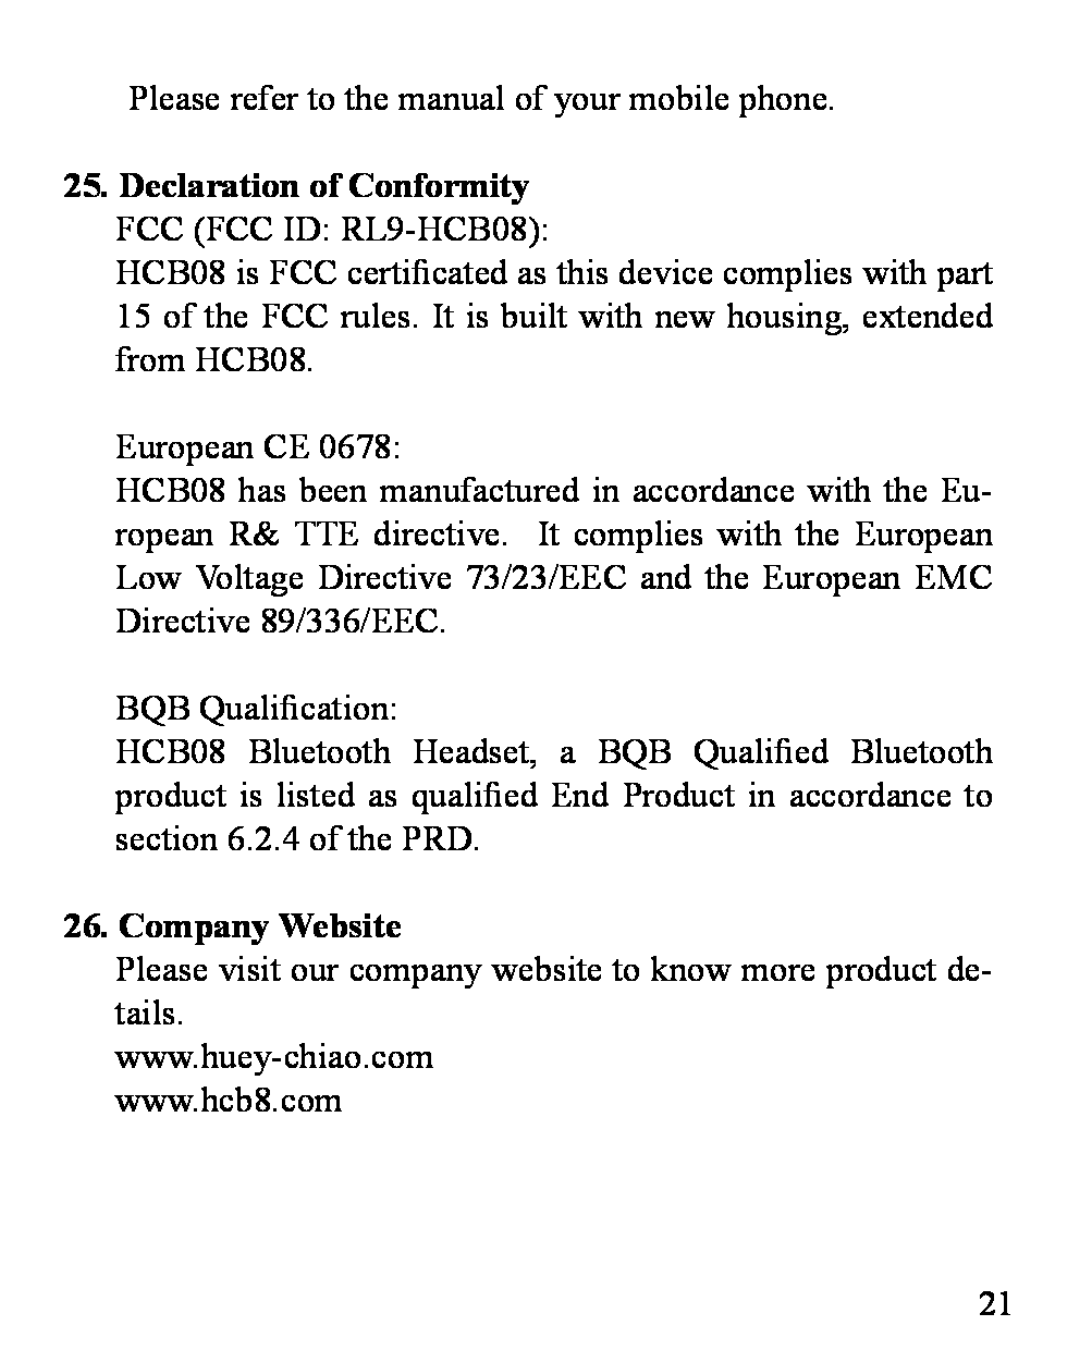 Huey Chiao HCB08 manual Company Website 